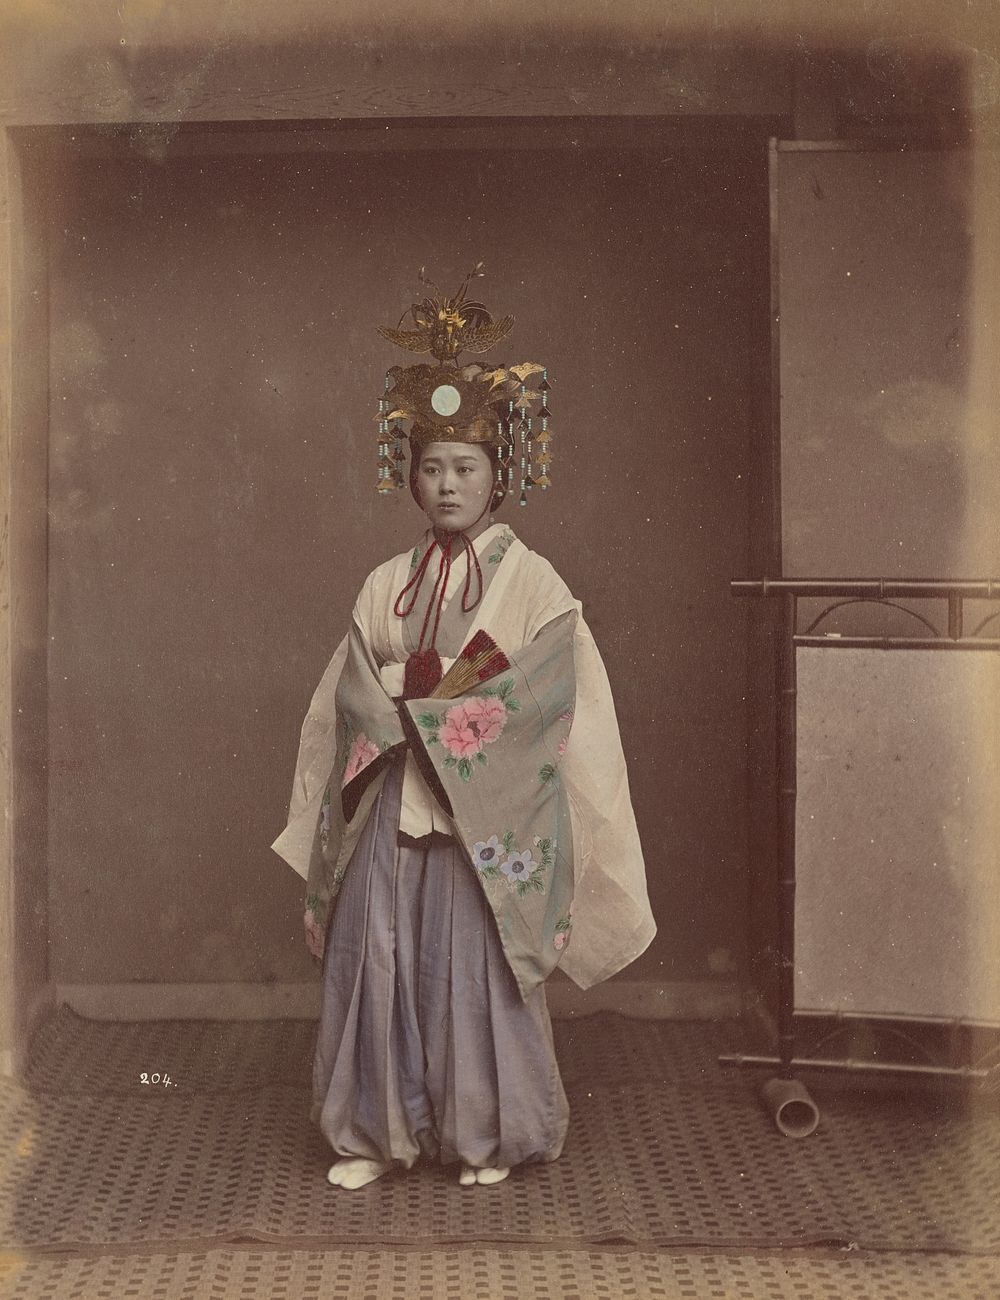 Woman in Headdress by Kusakabe Kimbei